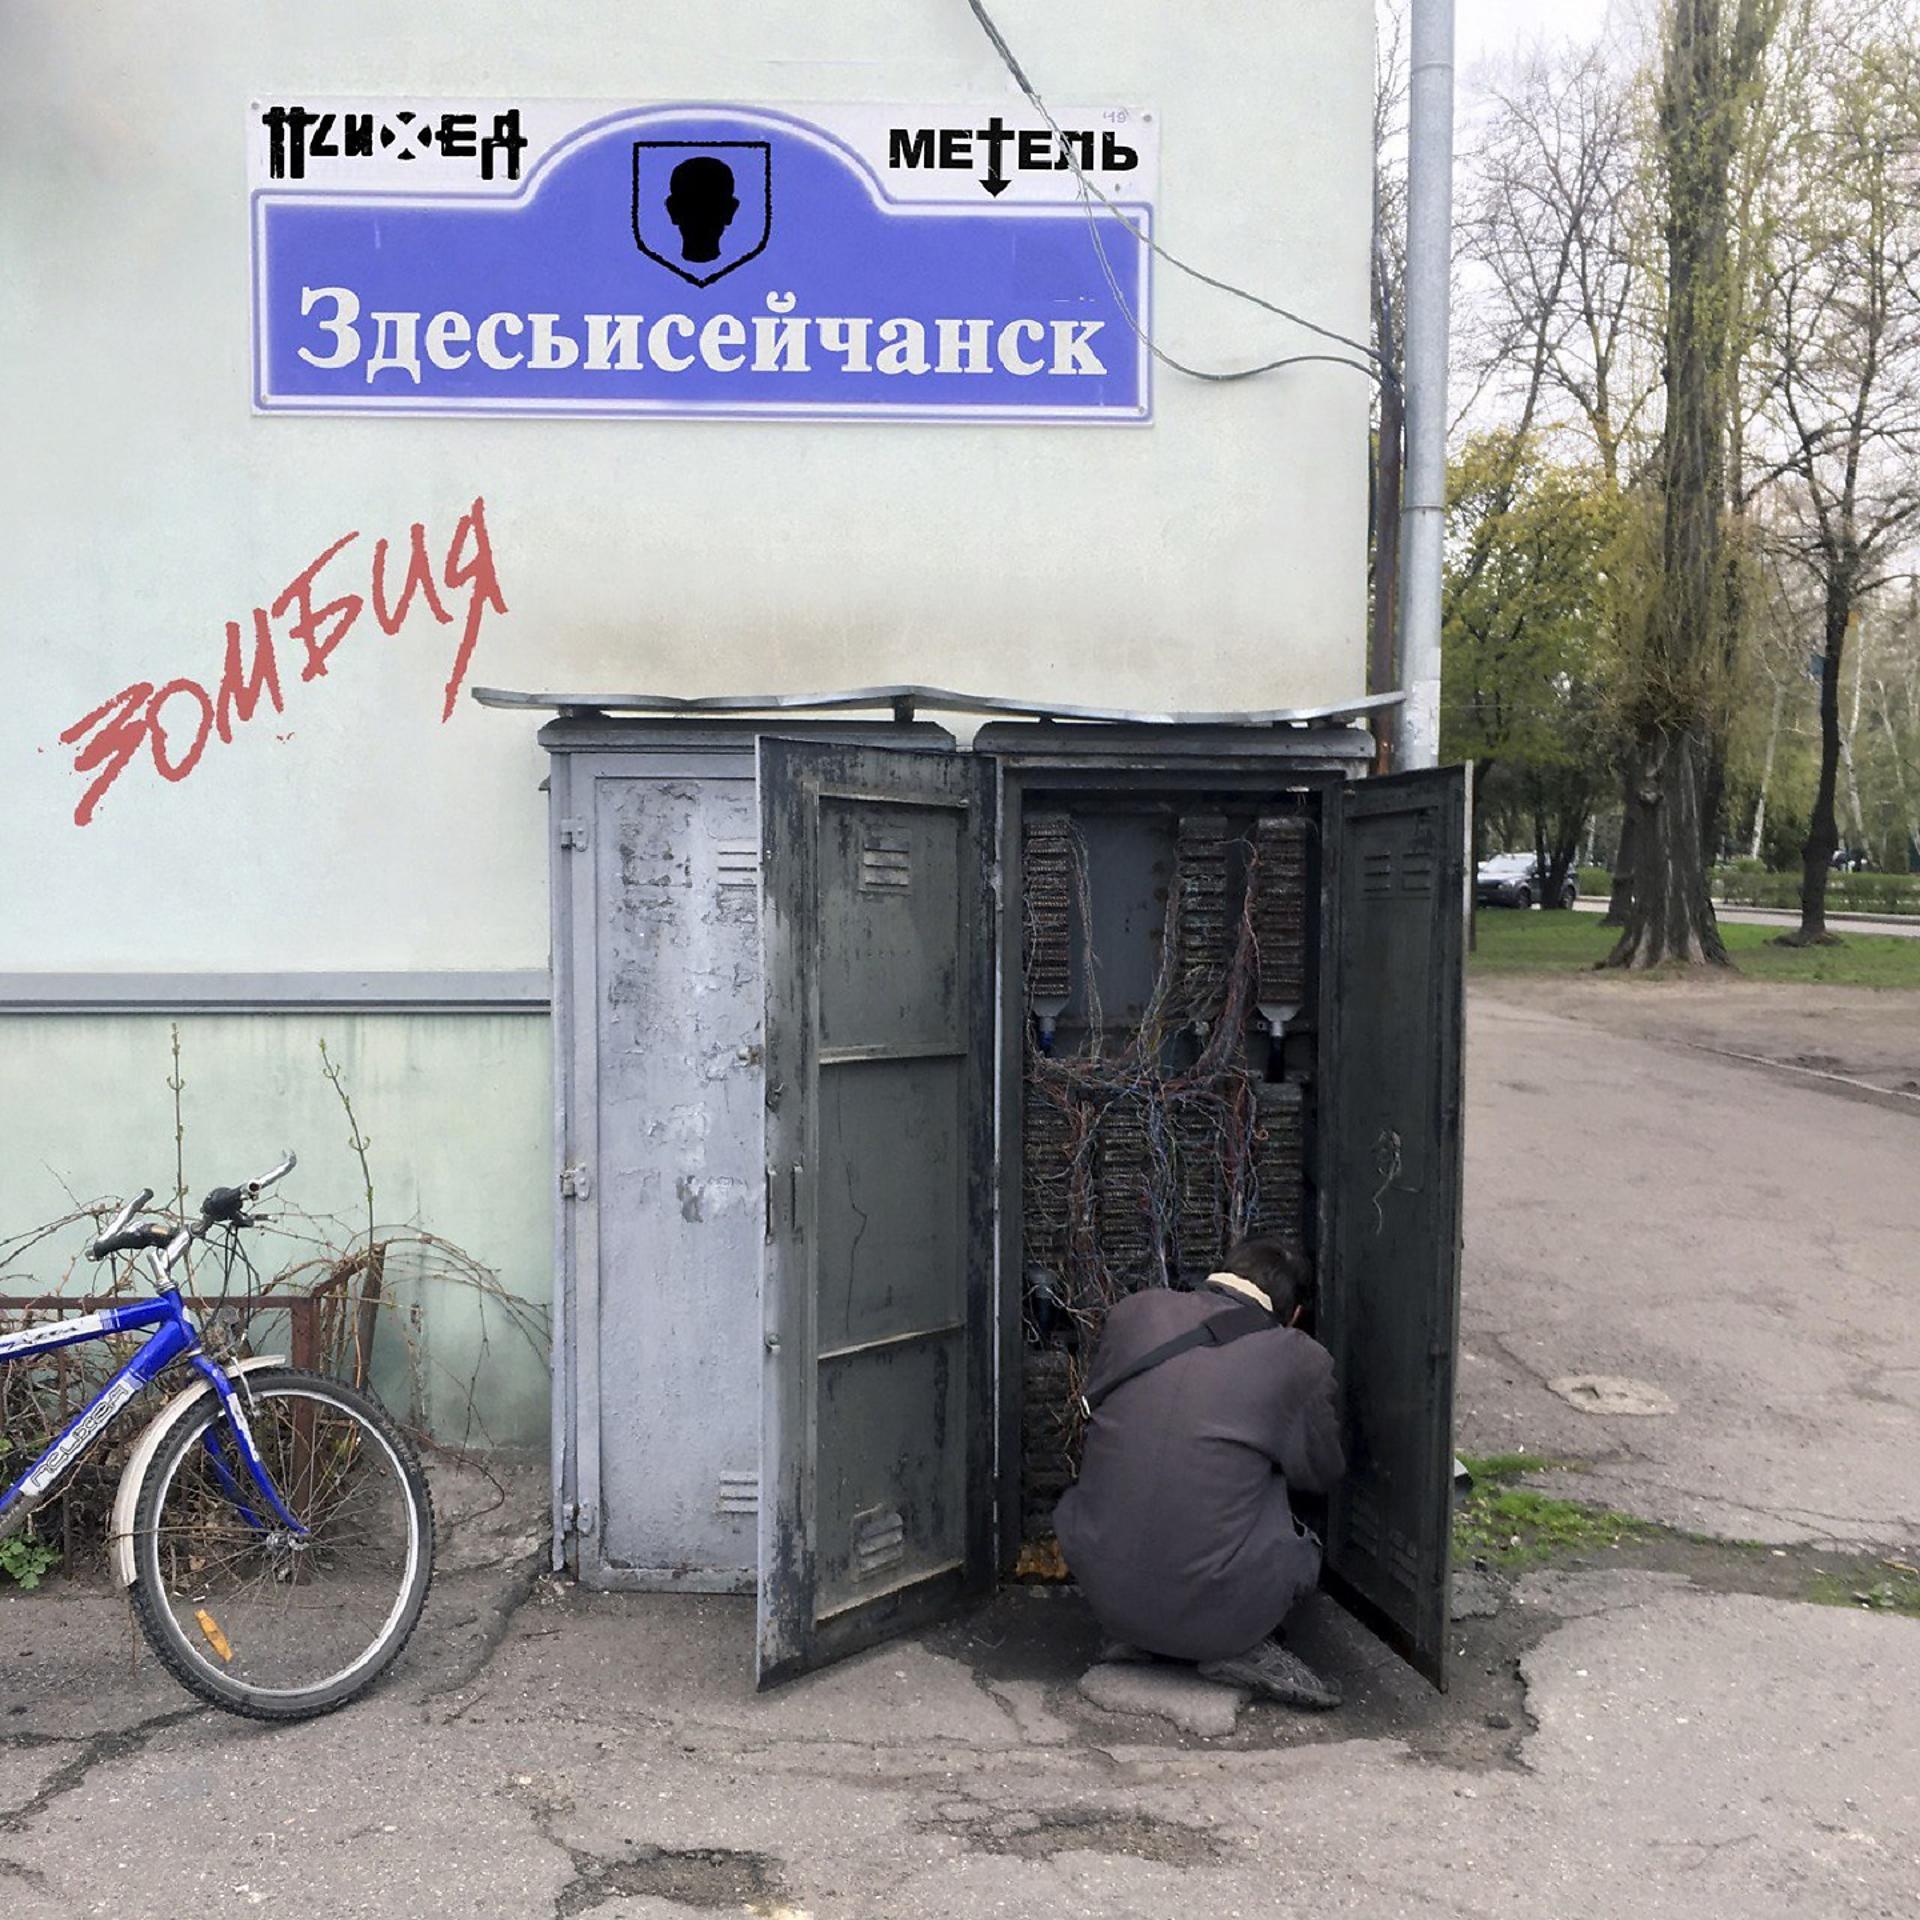 Постер к треку Психея, Метель - Здесьисейчанск / Зомбия (Azz Remix)